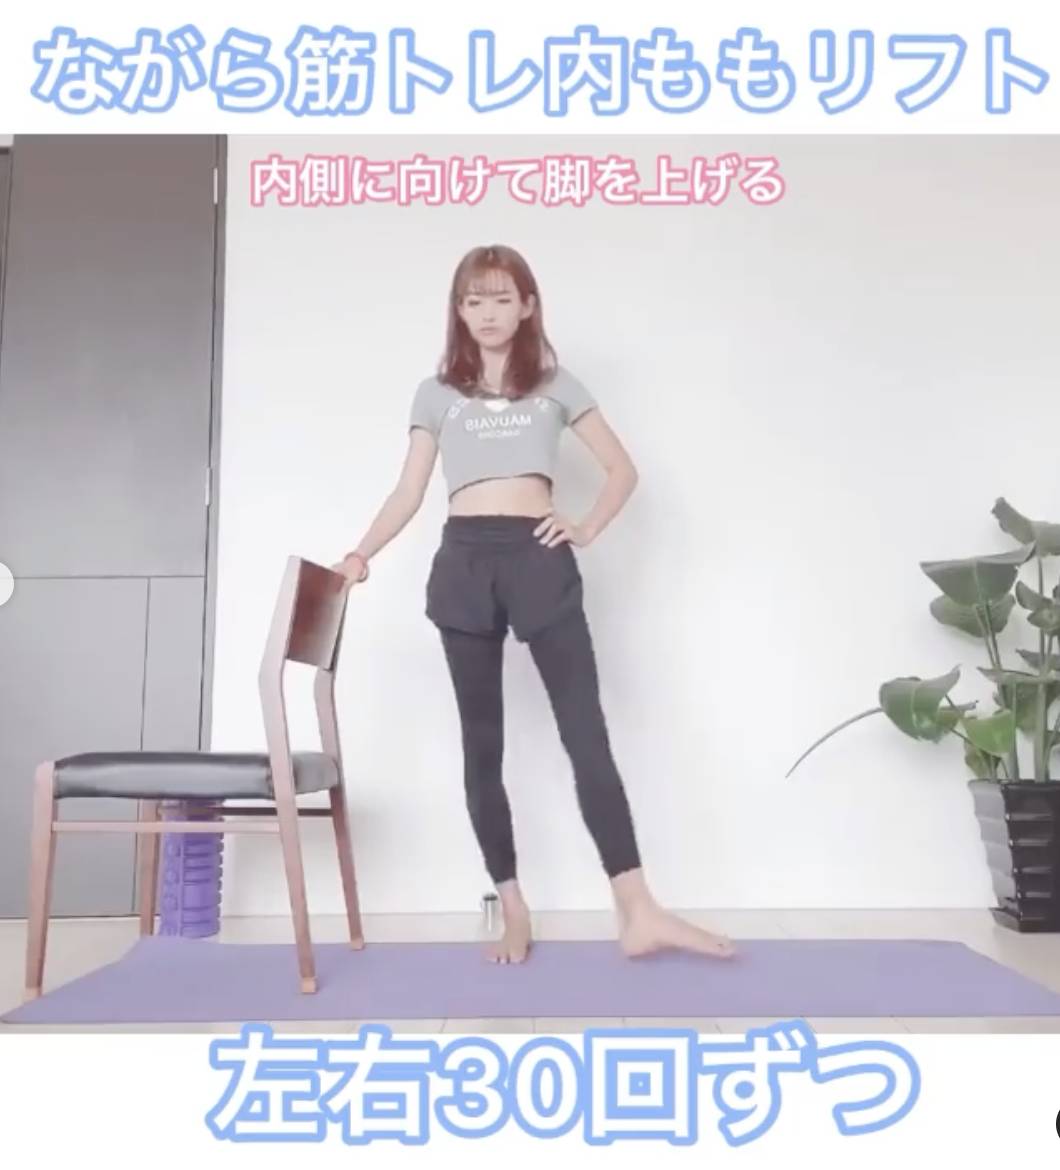 居家運動輕鬆減重8kg！日本女生從50kg減至42kg秘訣公開